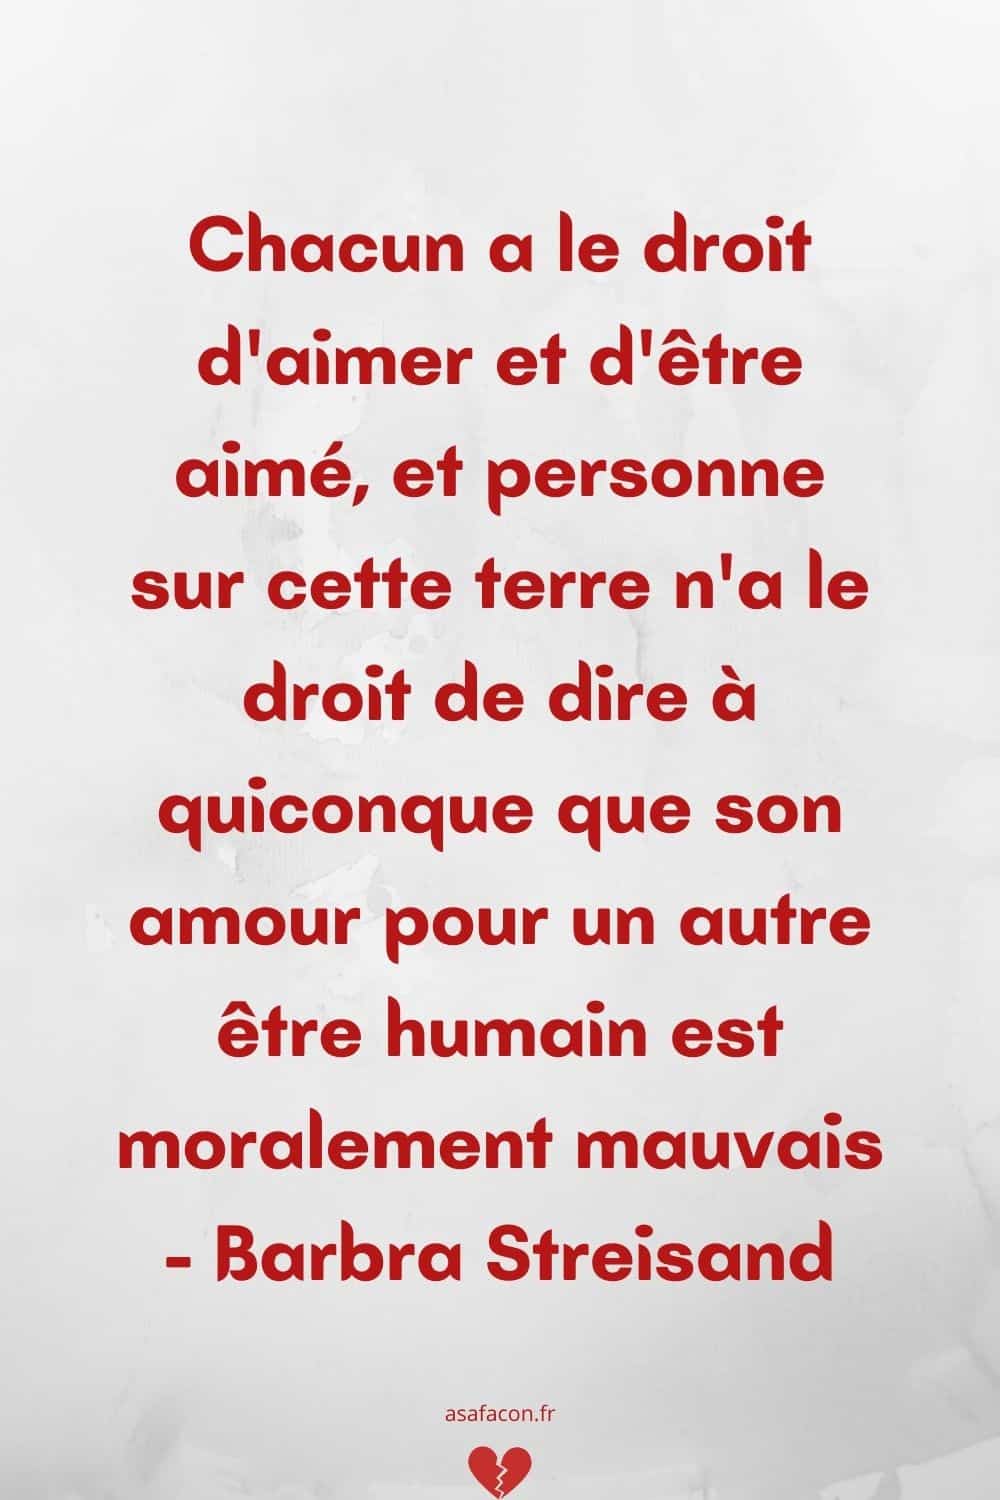 Citation Amour Perdu Top 25 Des Phrases De Chagrin D'amour